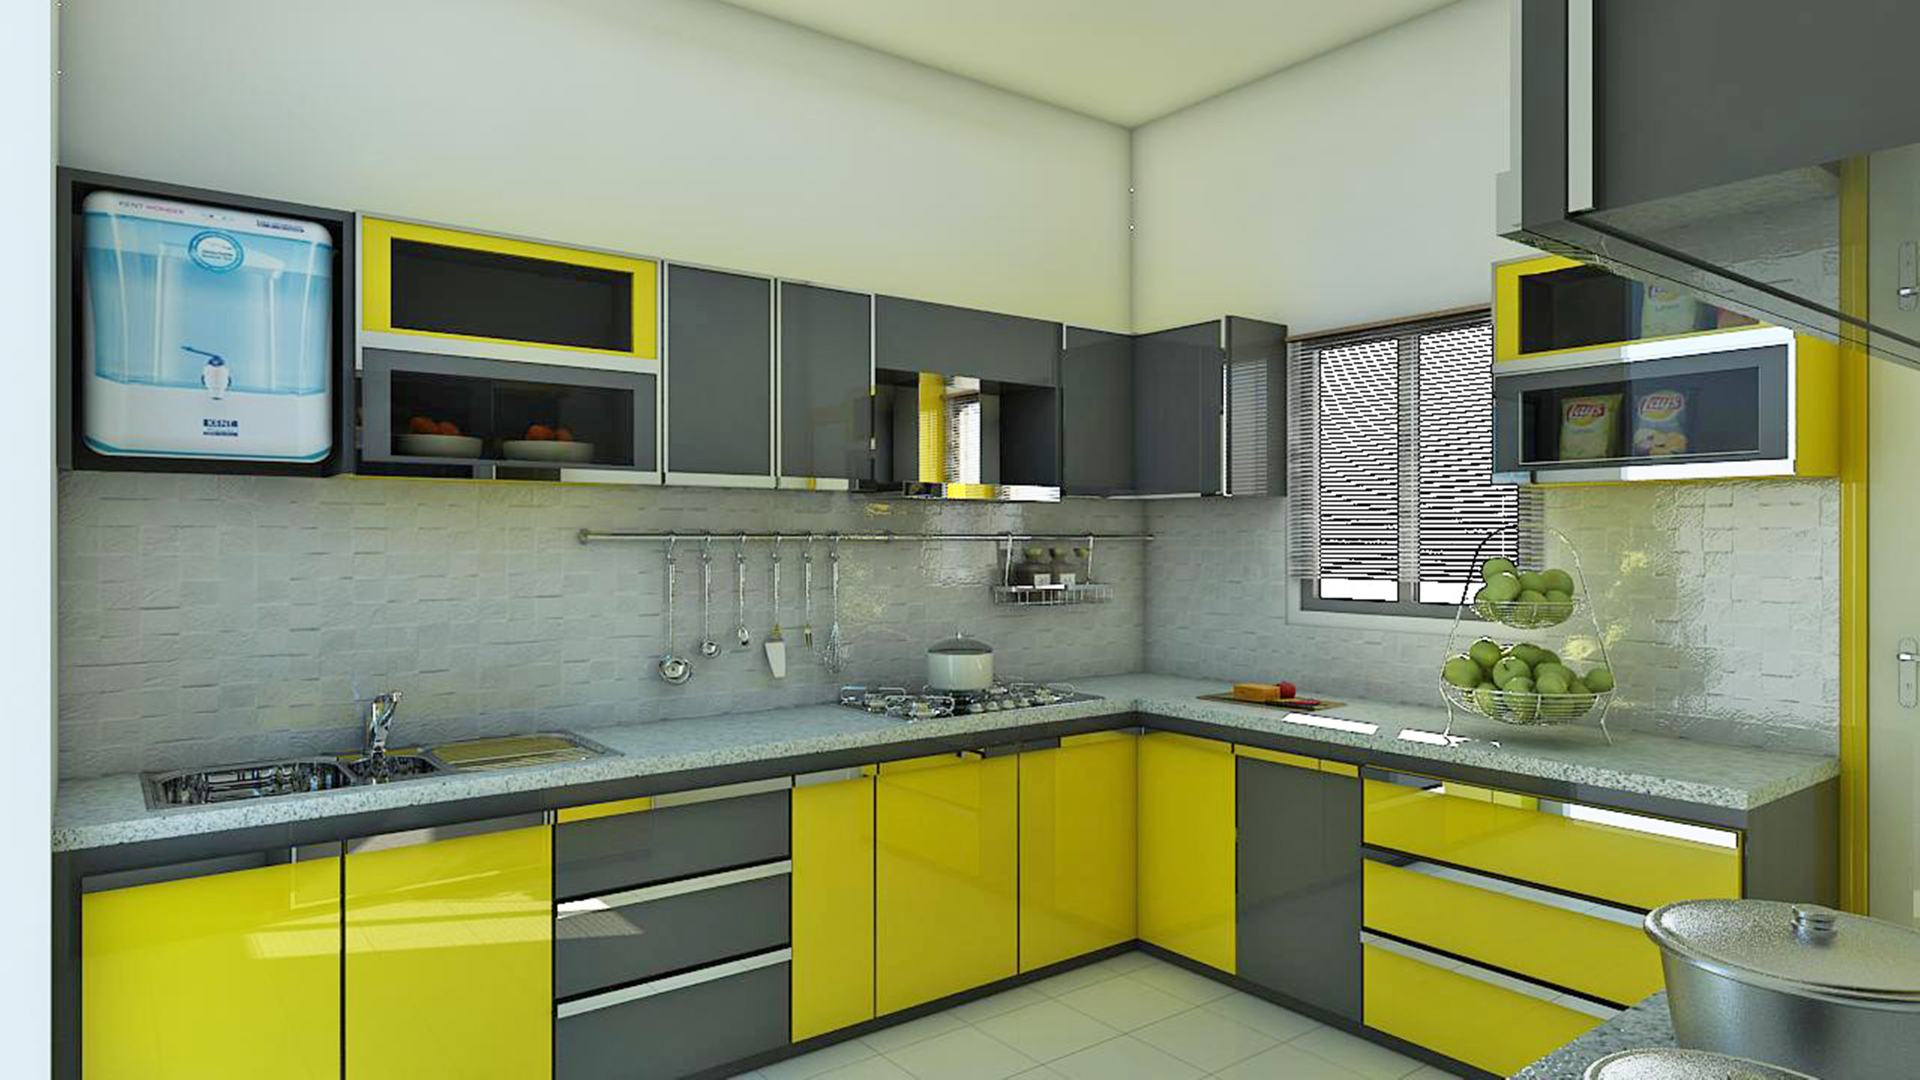 8 by 9 kitchen design